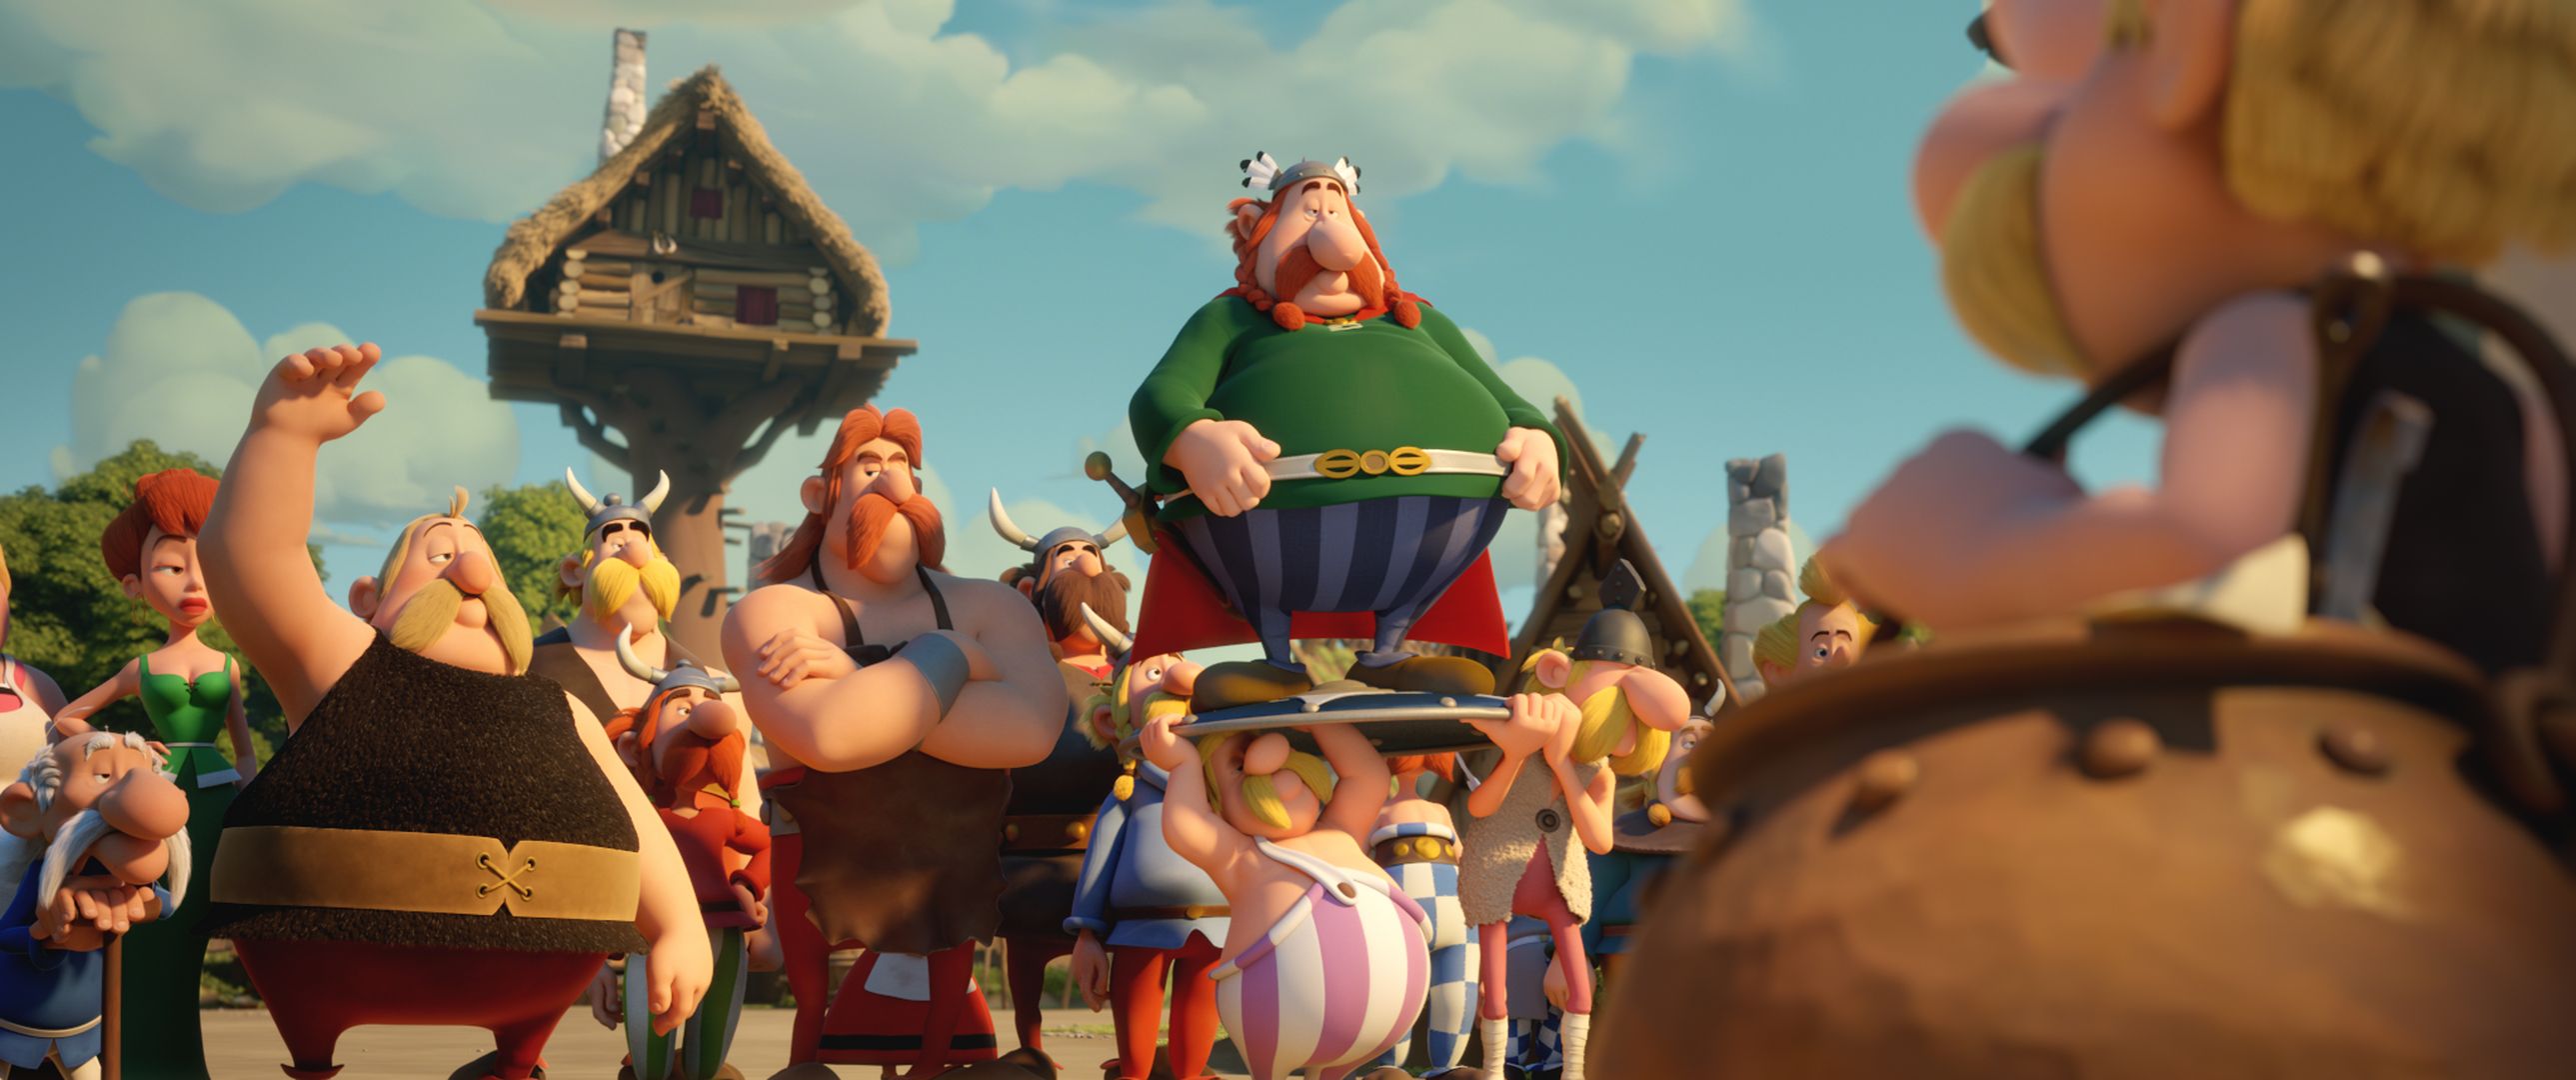 CINEMA - Astérix : Le Secret de la Potion Magique - Panoramix recherche - Asterix Le Secret De La Potion Magique Trailer